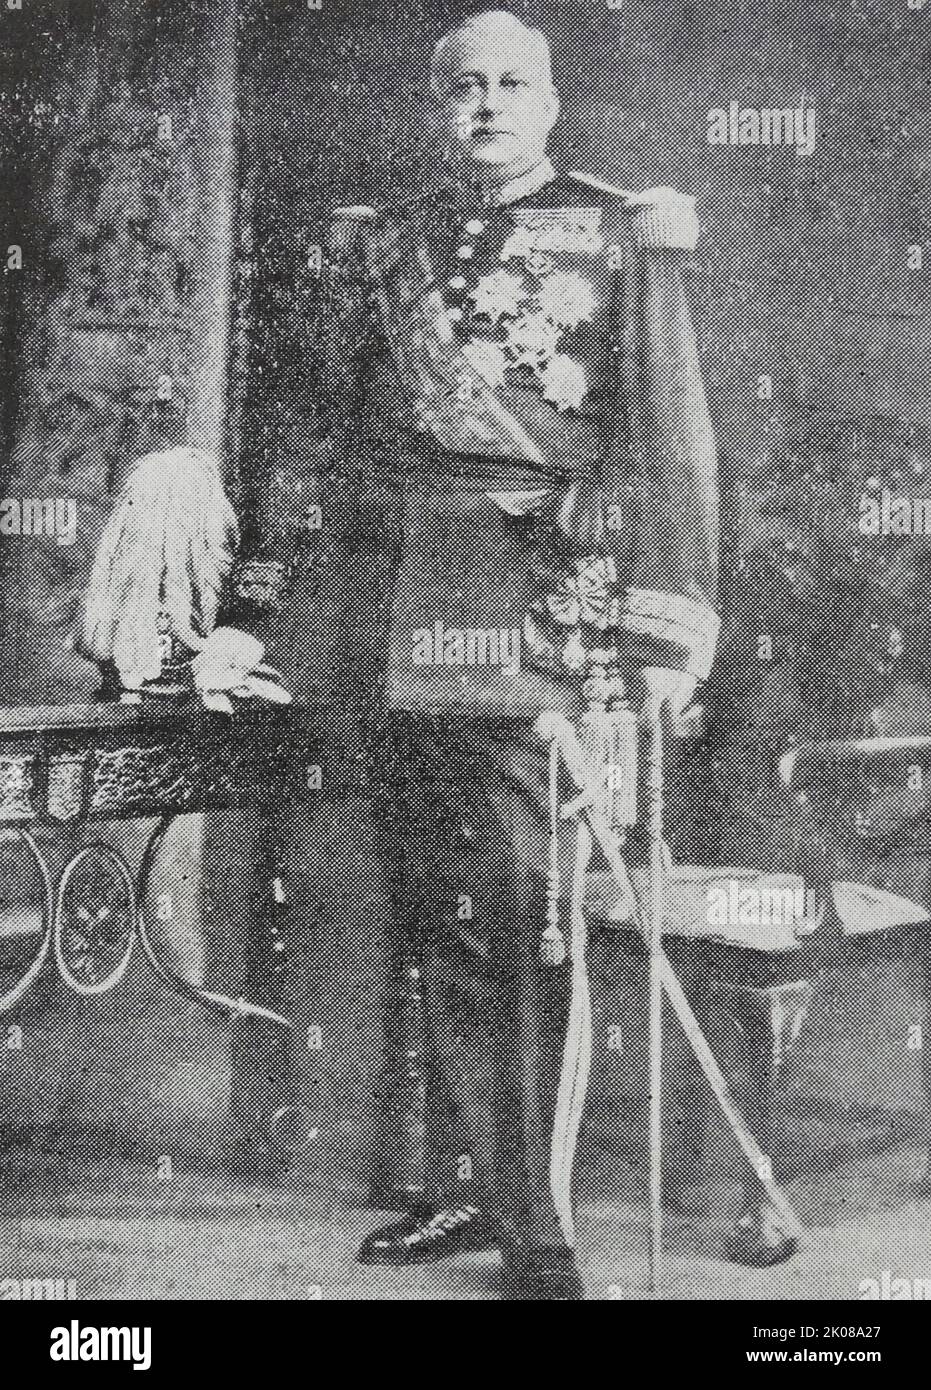 Miguel Primo de Rivera y Orbaneja, 2. Marquess of Estella (8. Januar 1870 - 16. März 1930), war ein Diktator, Aristokrat und Militäroffizier, der während der Restaurationszeit Spaniens von 1923 bis 1930 als Premierminister von Spanien diente Stockfoto